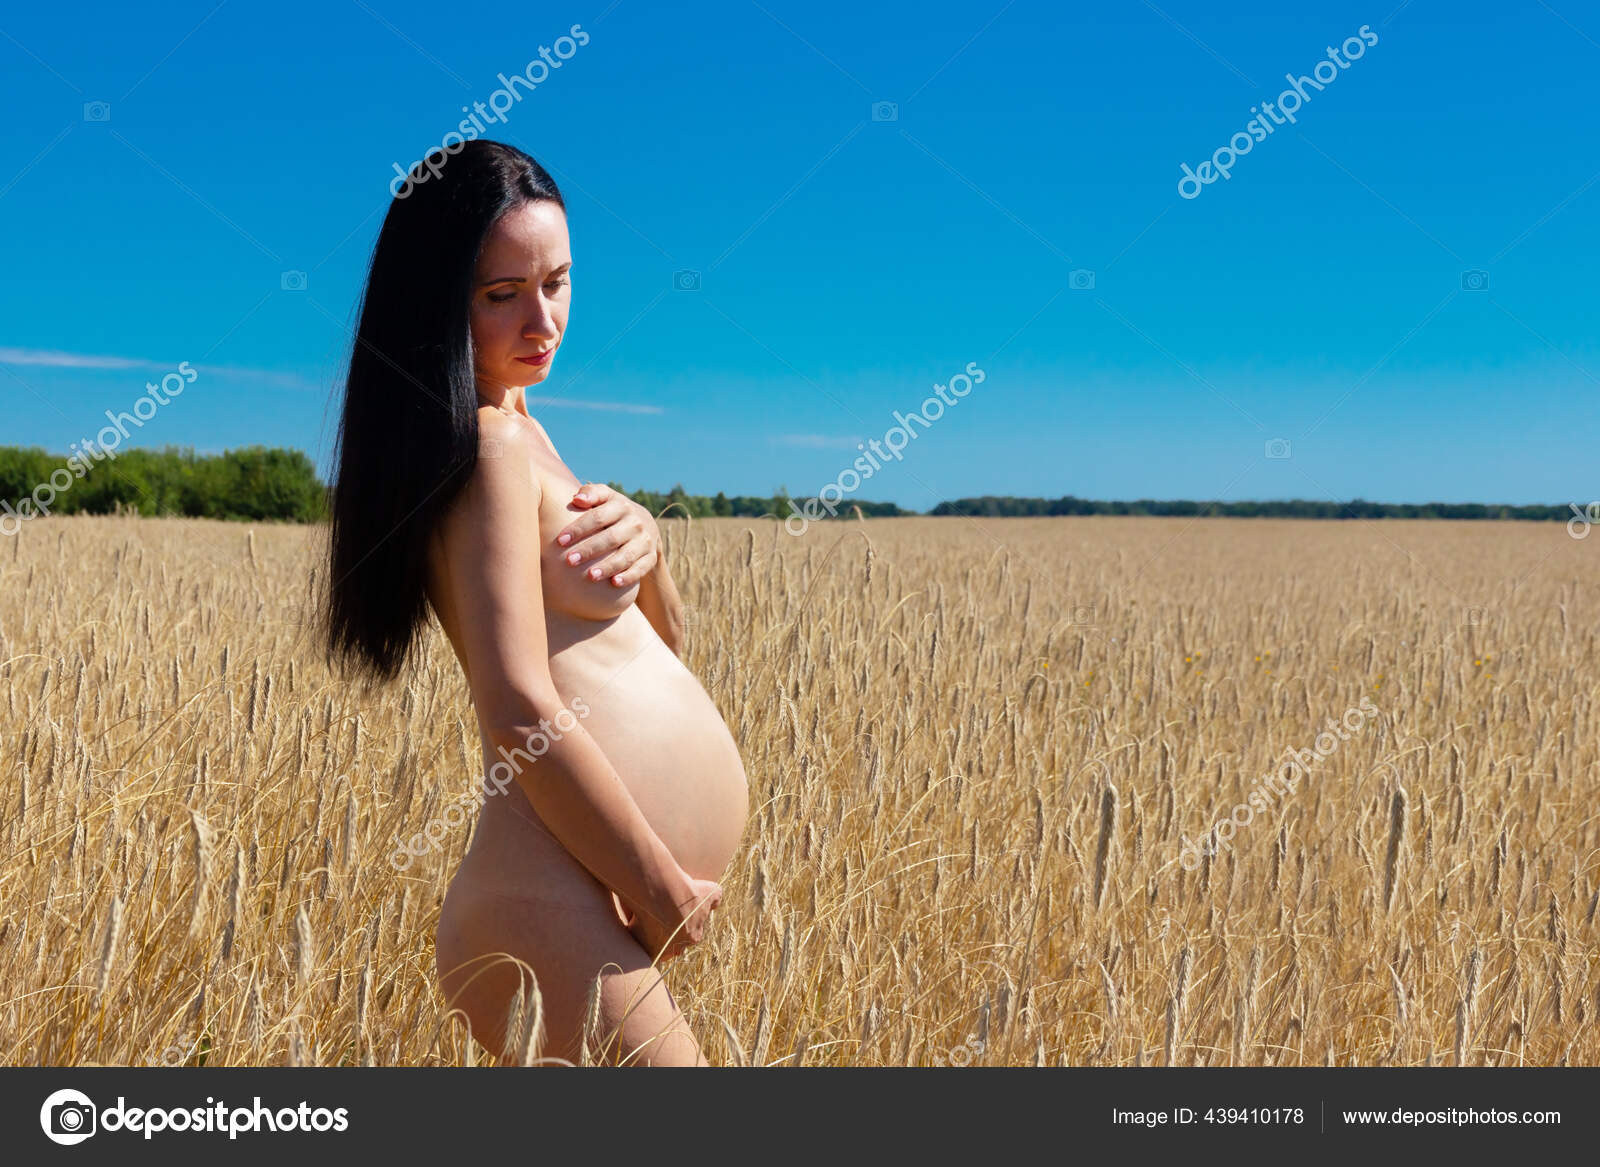 孕妇裸体 中国新闻网